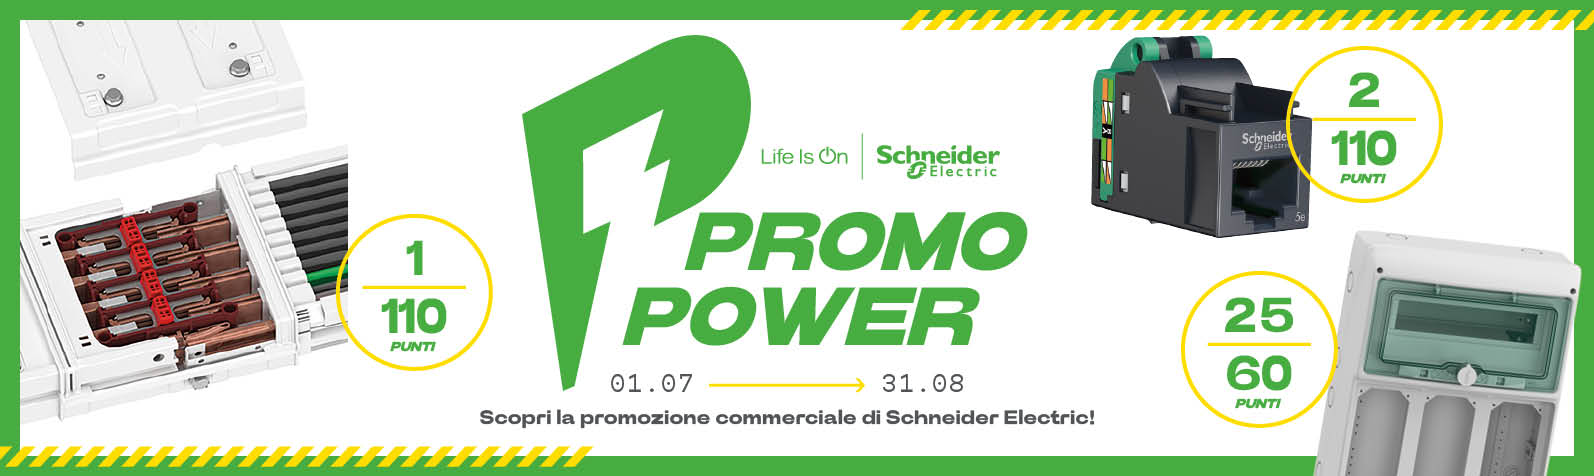 banner promo power schneider